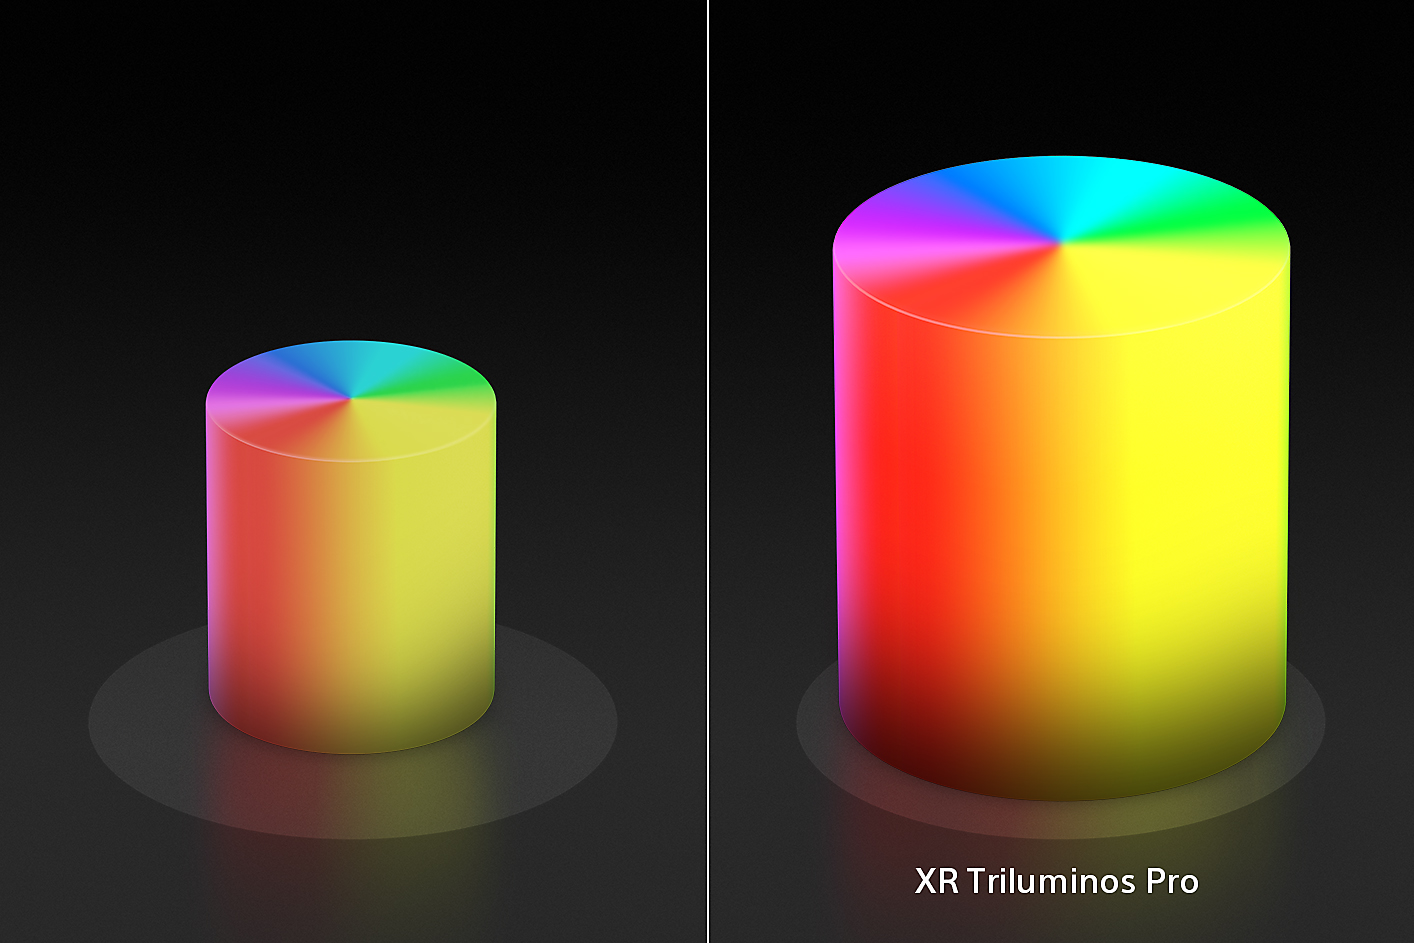 Écran partagé montrant deux cônes de couleur en forme de bougie, un petit à gauche et un plus grand à droite avec les couleurs et les textures améliorées par XR Triluminos Pro